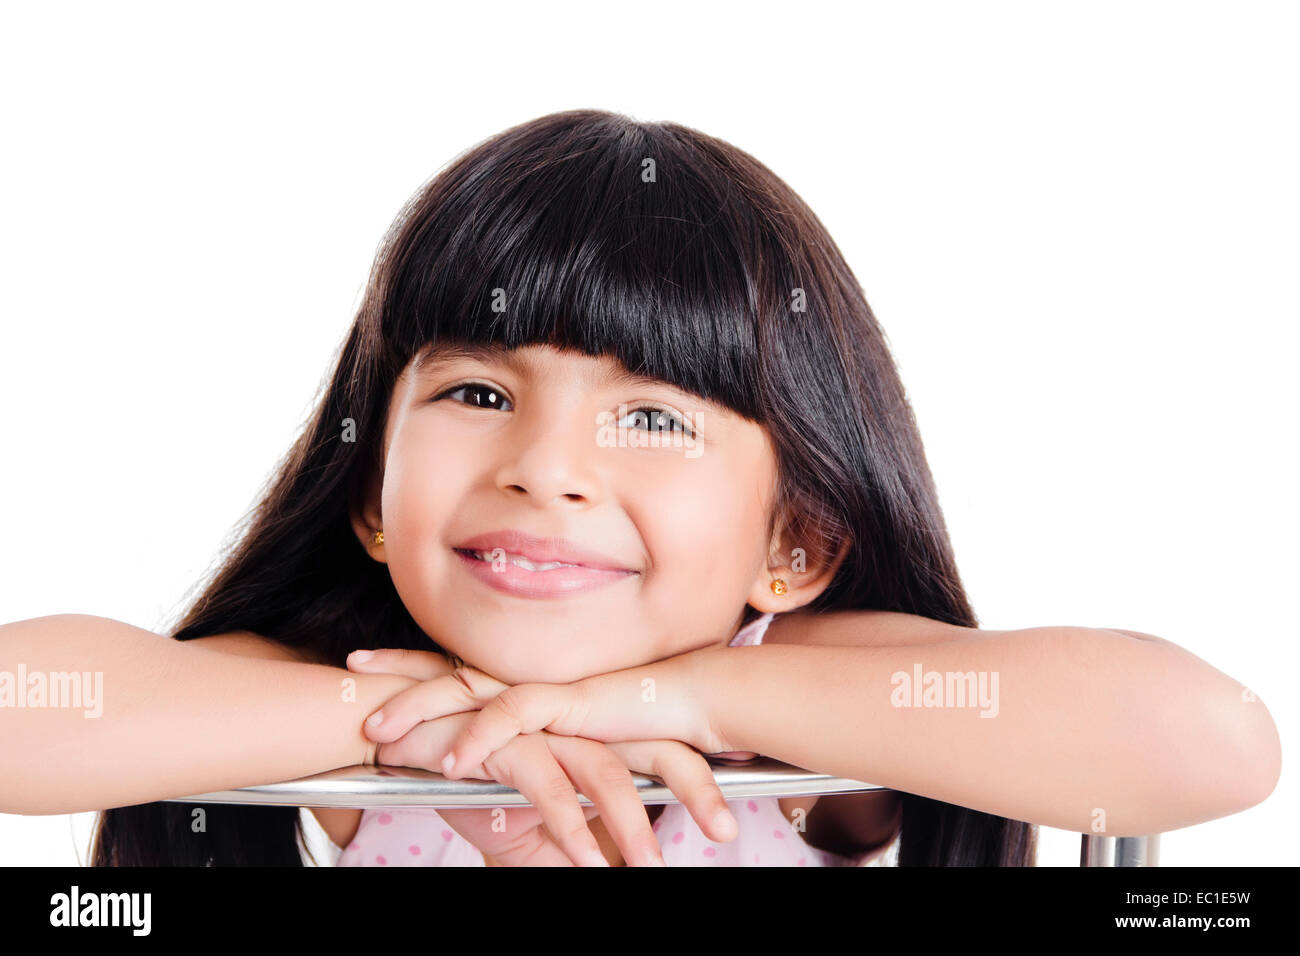 indian Beautiful Child Stock Photo - Alamy